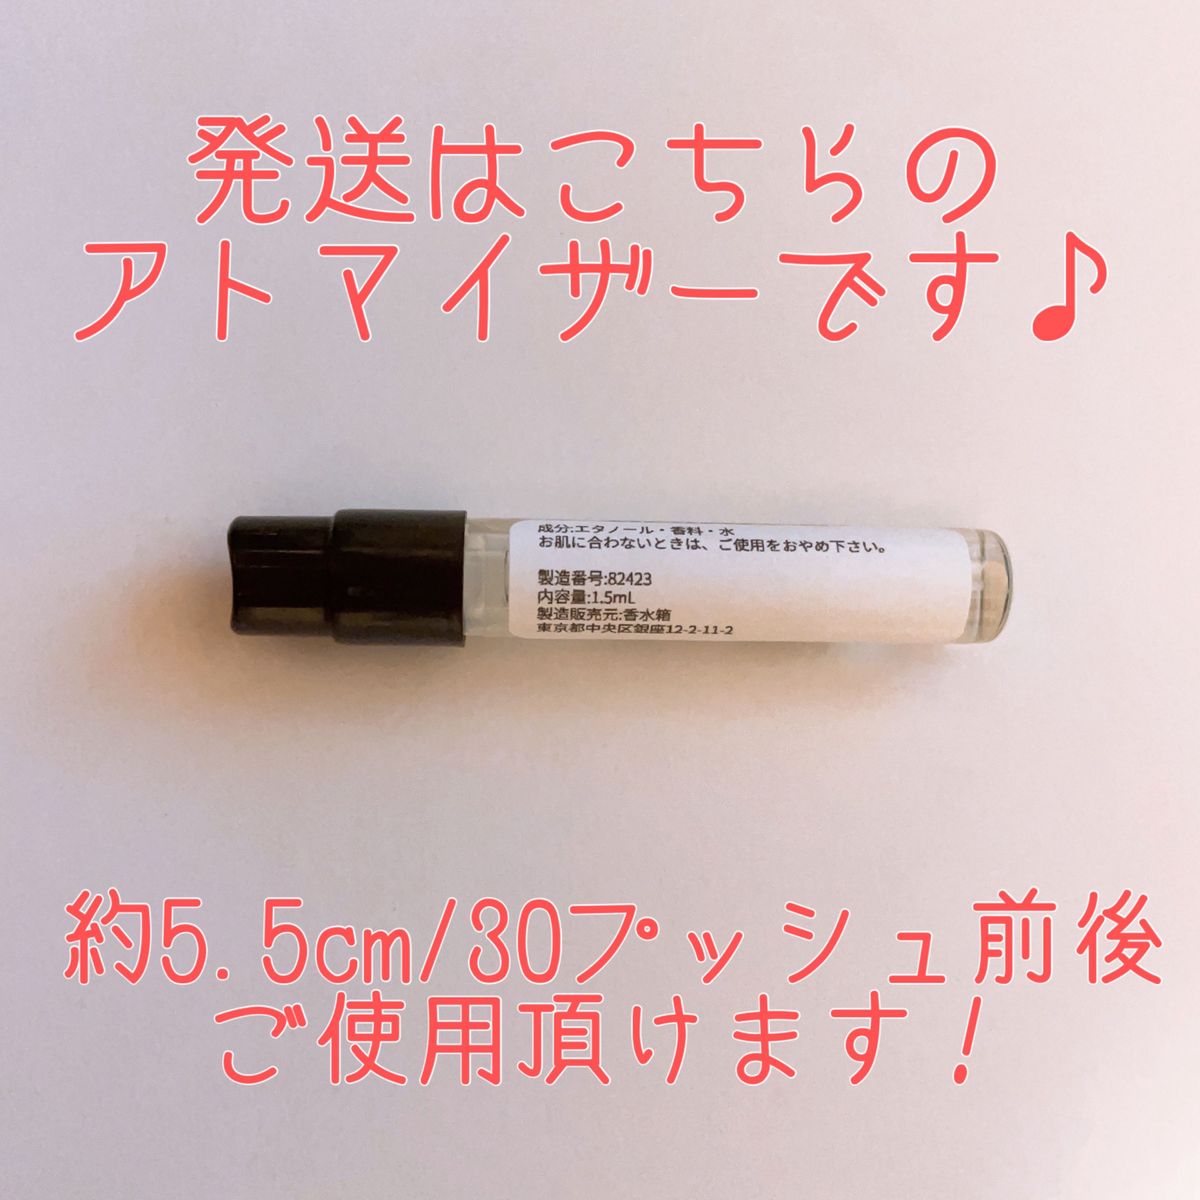 ジェイセント 恋雨 香水 パルファム 1.5ml